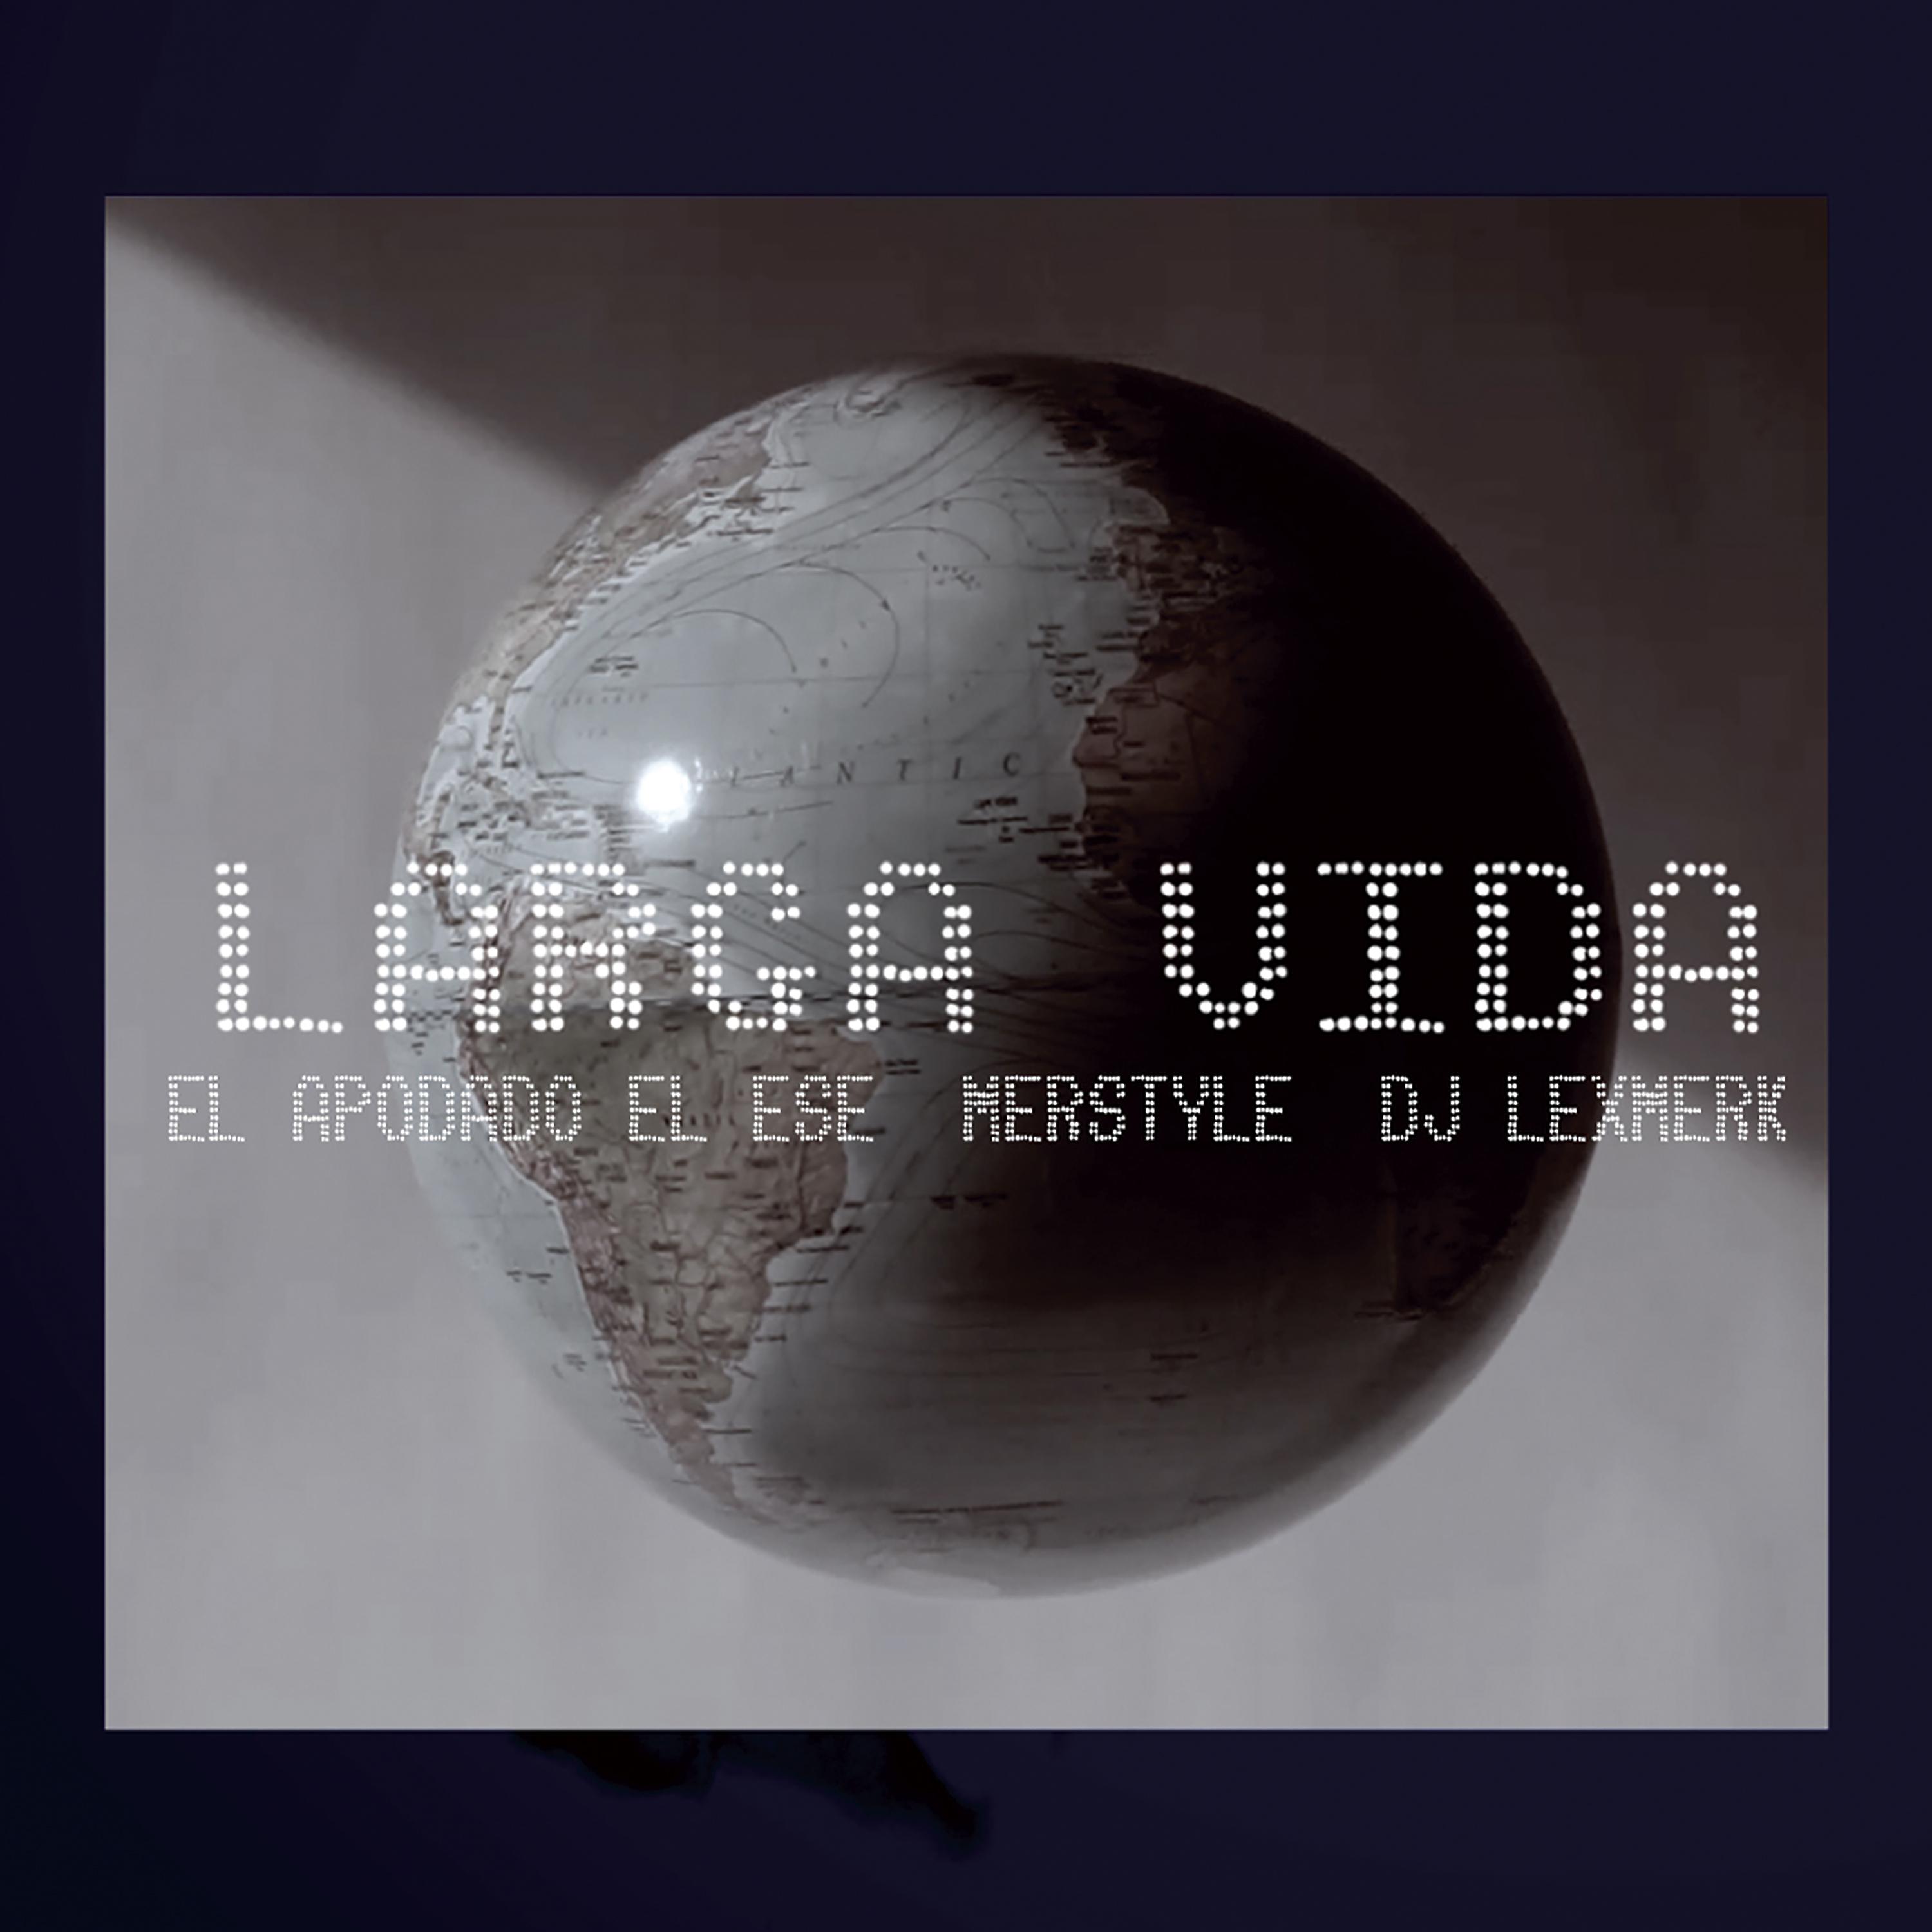 Постер альбома Larga Vida